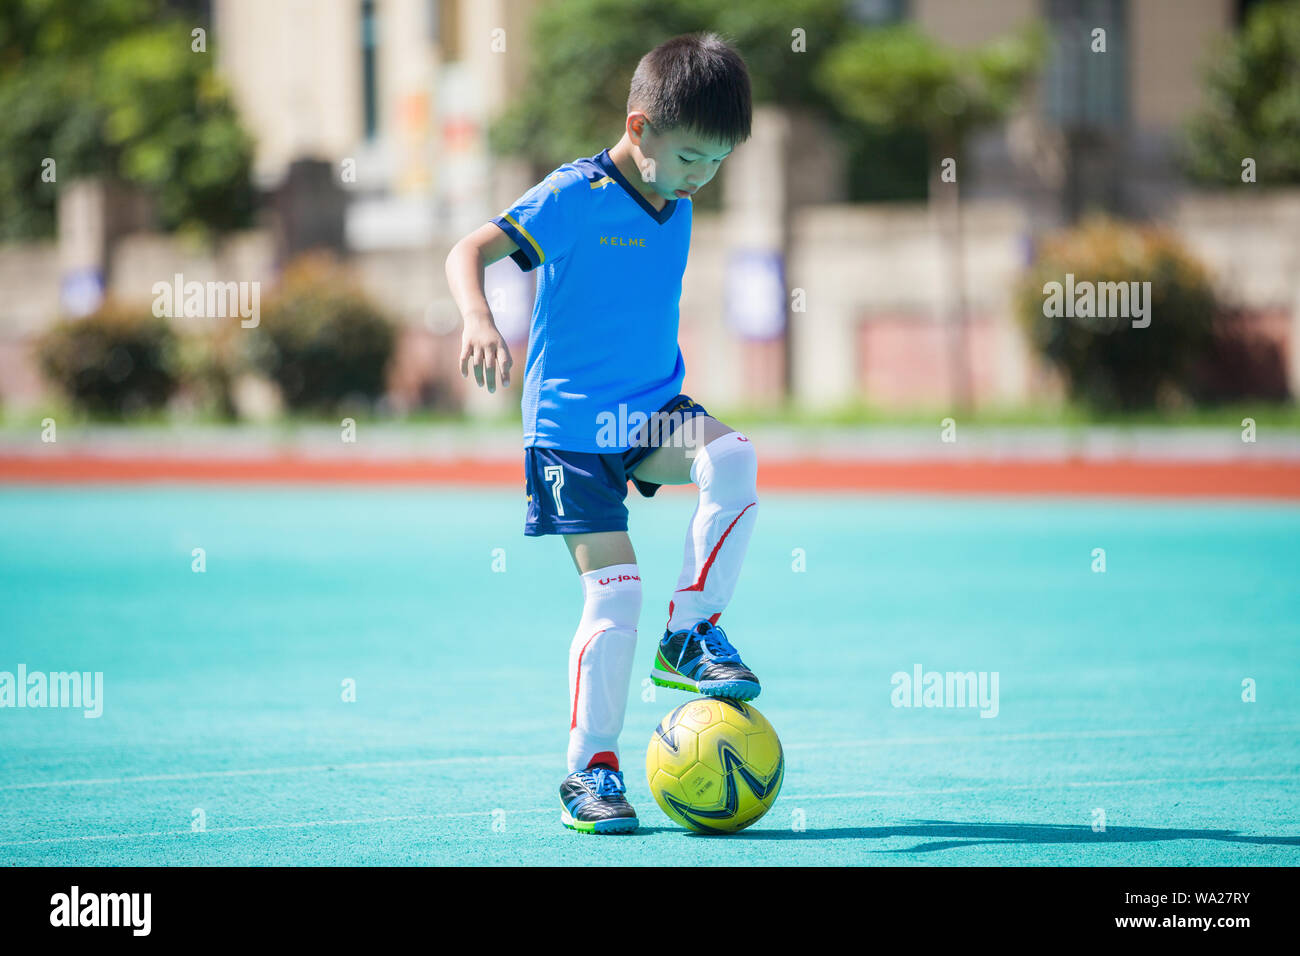 Le garçon jouant au football Banque D'Images